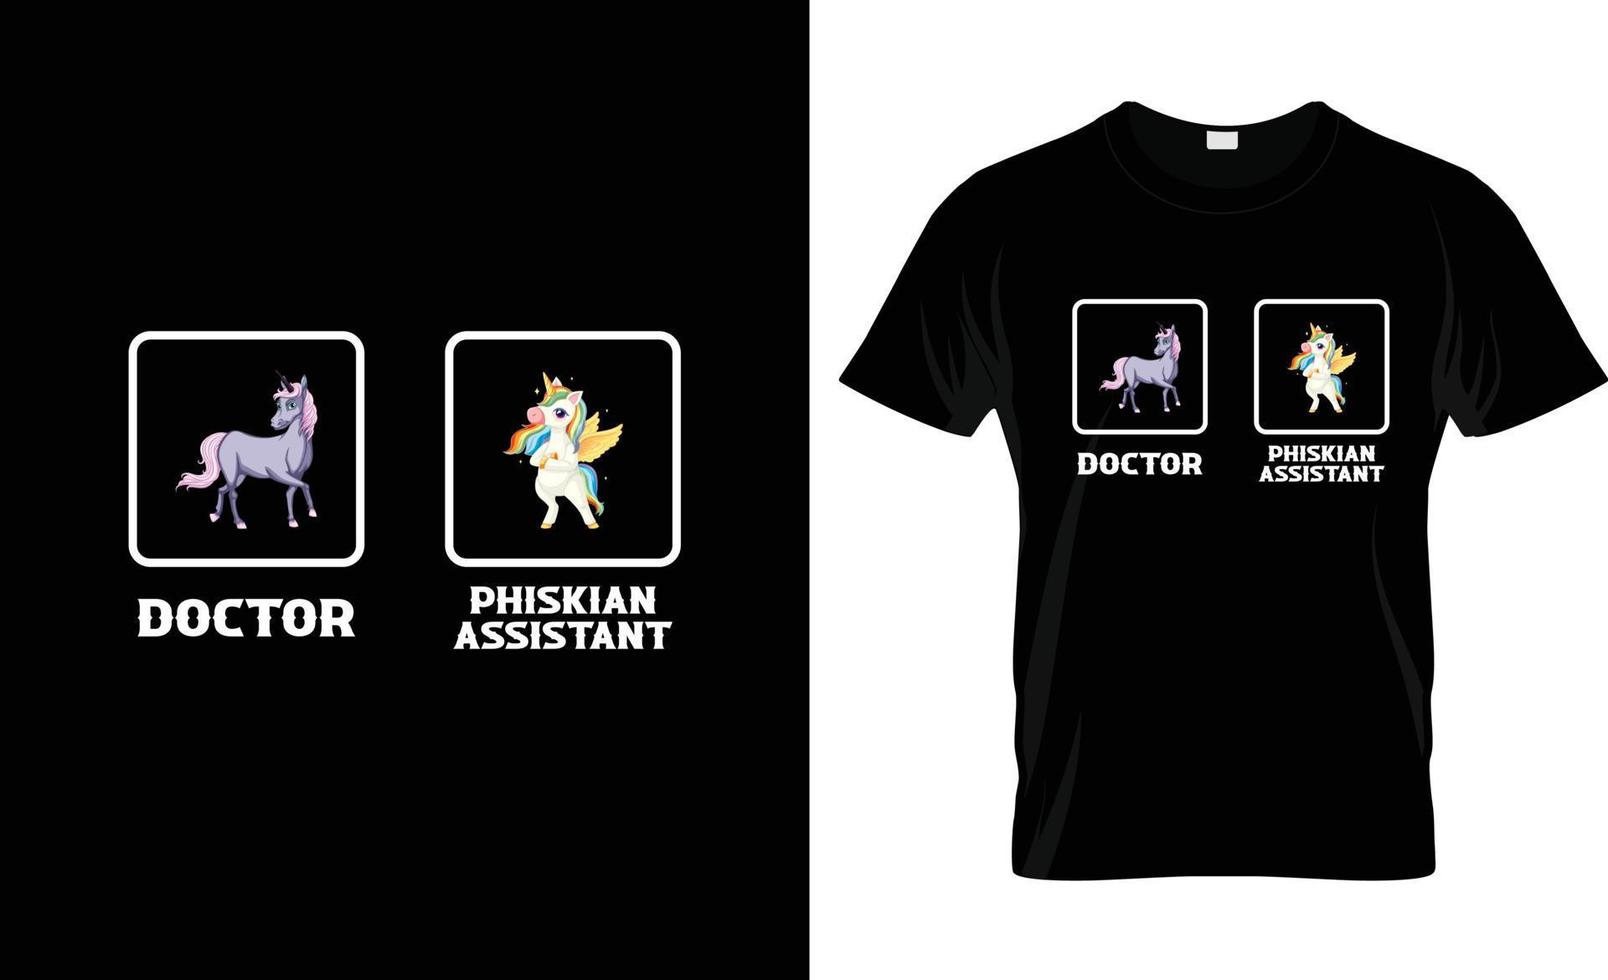 Arzt-T-Shirt-Design, Arzt-T-Shirt-Slogan und Bekleidungsdesign, Arzttypografie, Arztvektor, Arztillustration vektor